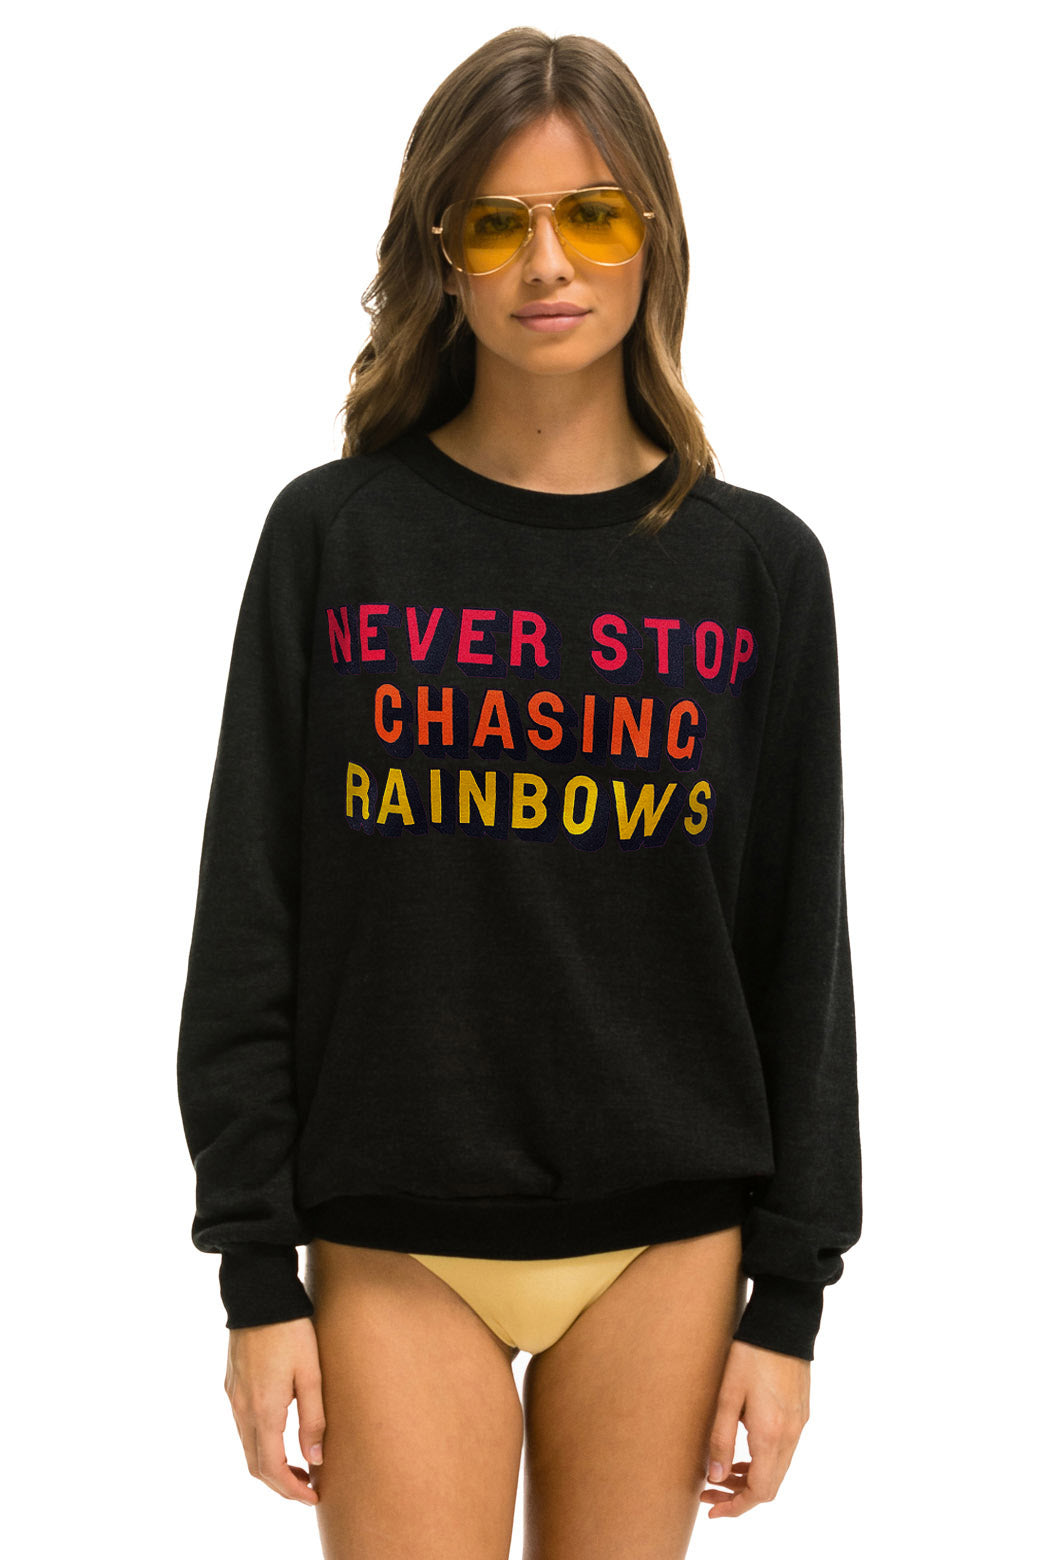 NEVER STOP CHASING RAINBOWS CREW SWEATSHIRT - BLACK Sweatshirt Aviator Nation 